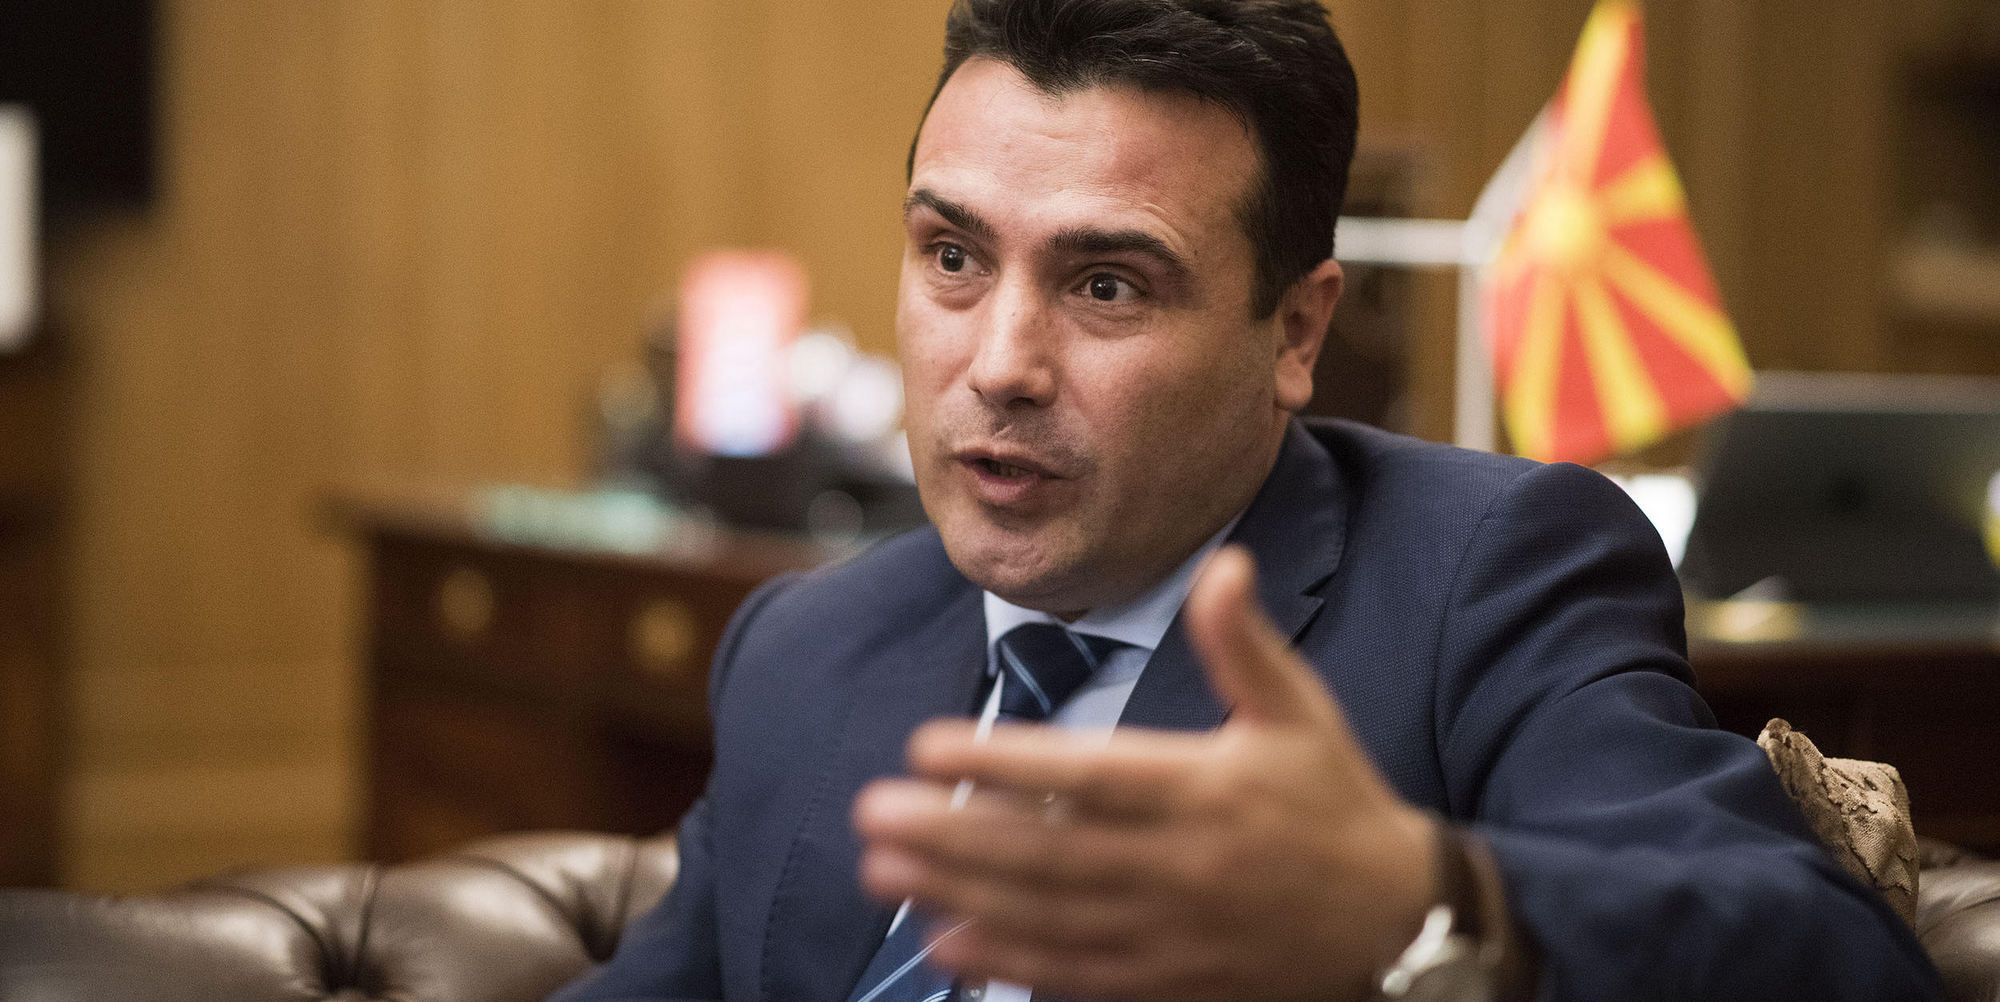 Ζ. Ζάεφ: «Το επίθετο “μακεδονικός” θα χρησιμοποιείται σε όλους τους οργανισμούς πλην των κρατικών»